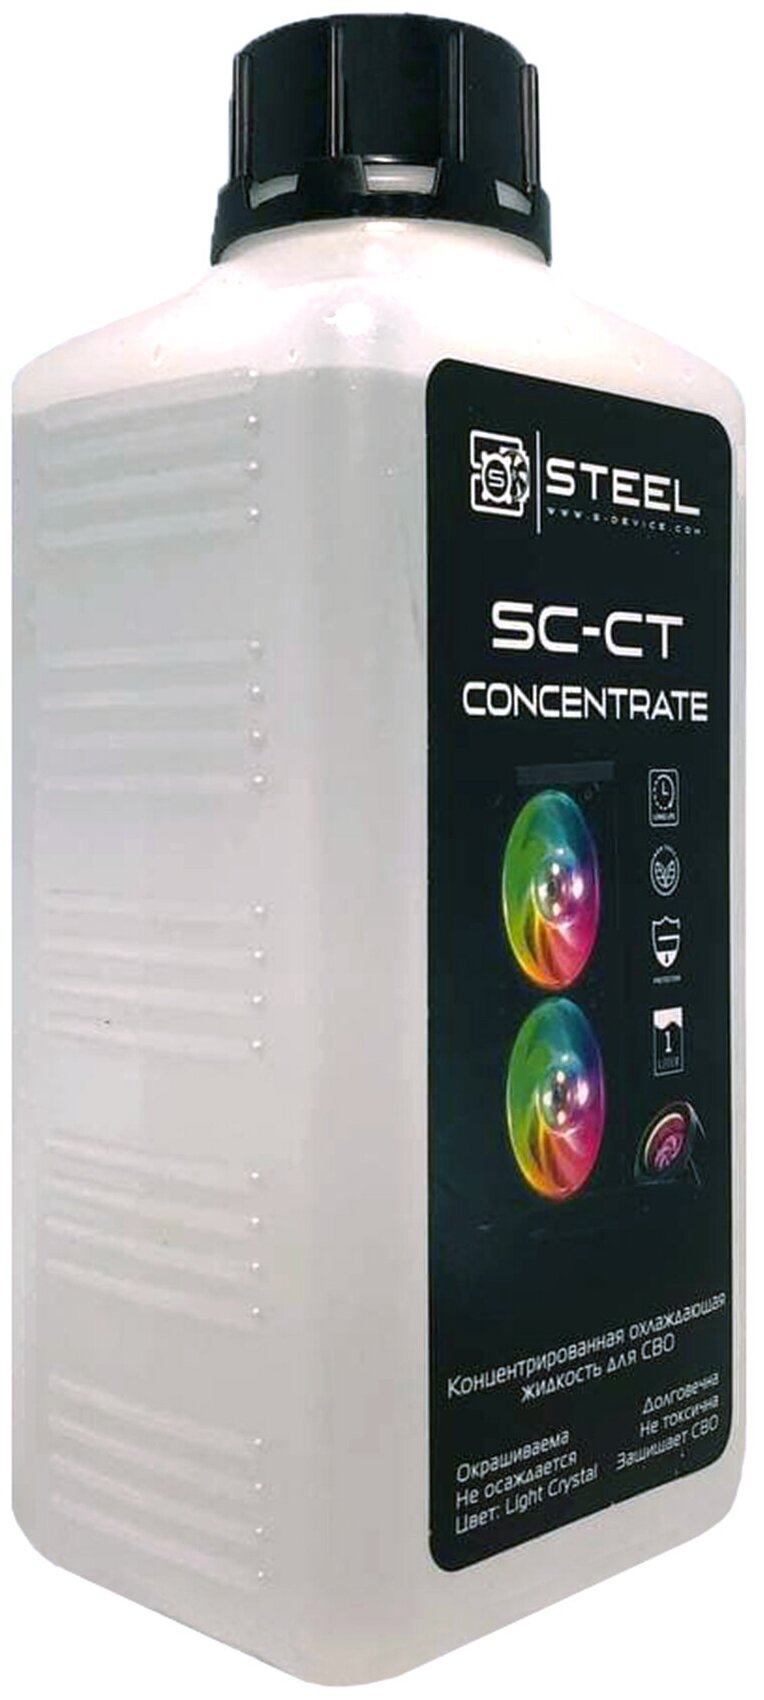 Жидкость для систем водяного охлаждения СВО Steel Coolant SC-CT, 1л, концентрат 1:8